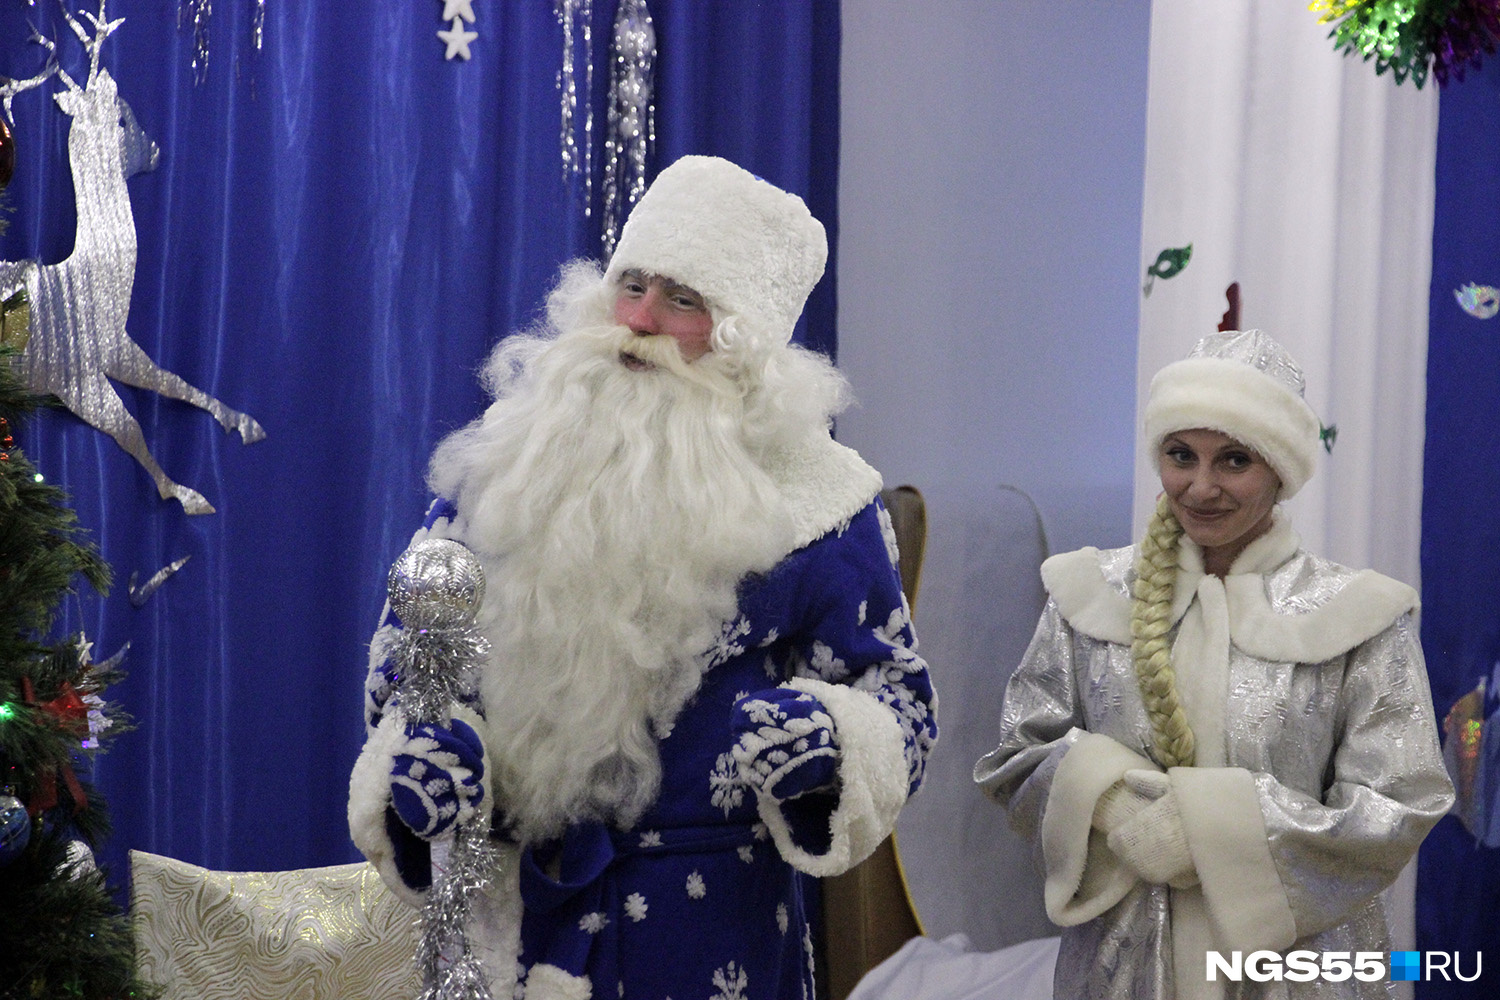 Омским родителям хочется, чтобы в роли Деда Мороза был профессиональный актер